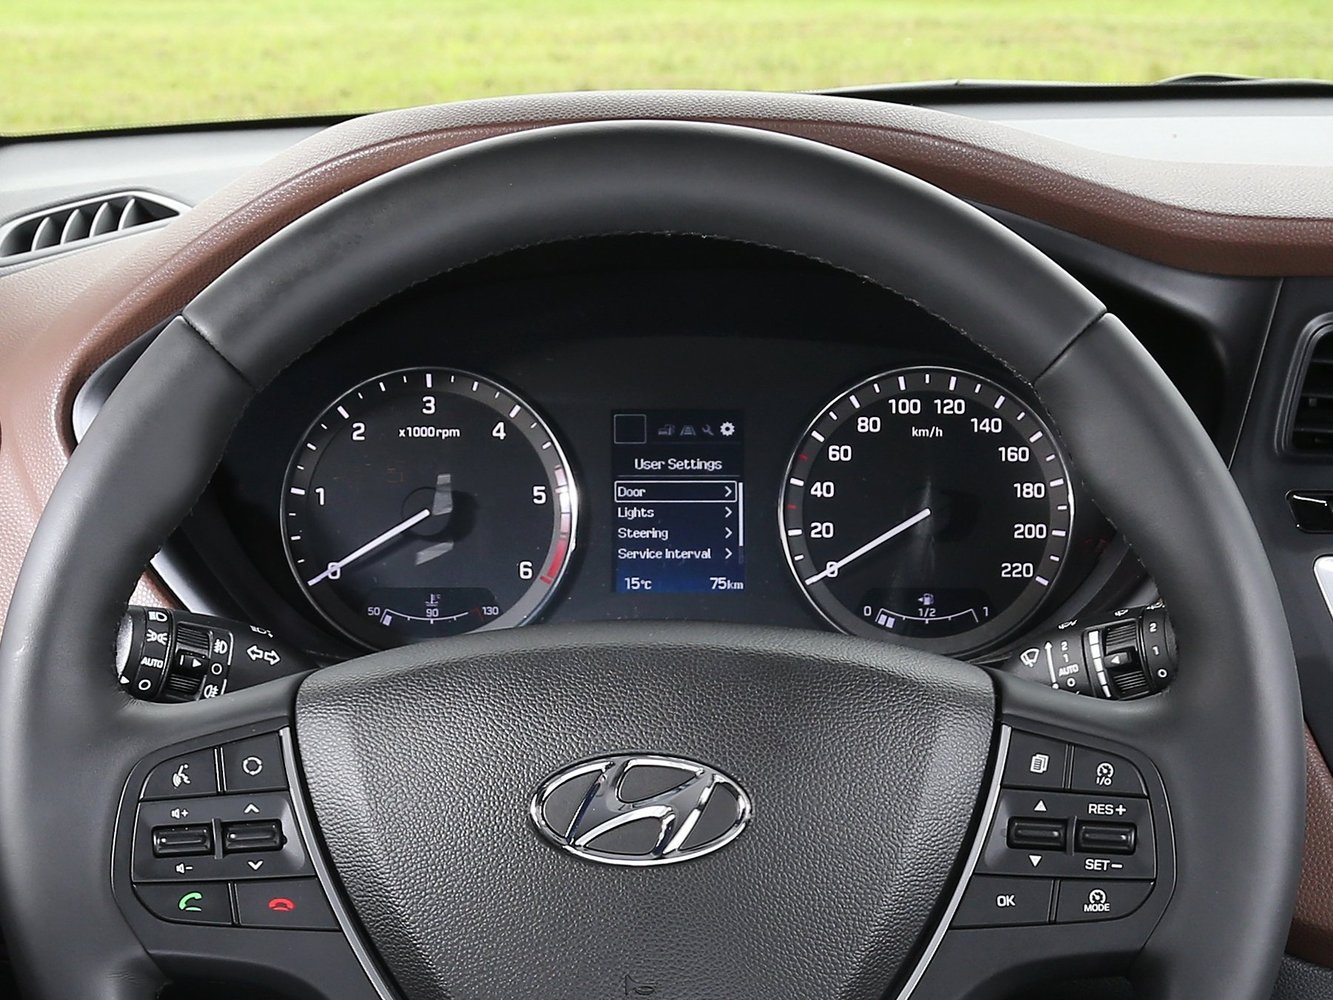 хэтчбек 5 дв. Hyundai i20 2014 - 2016г выпуска модификация 1.1 MT (75 л.с.)